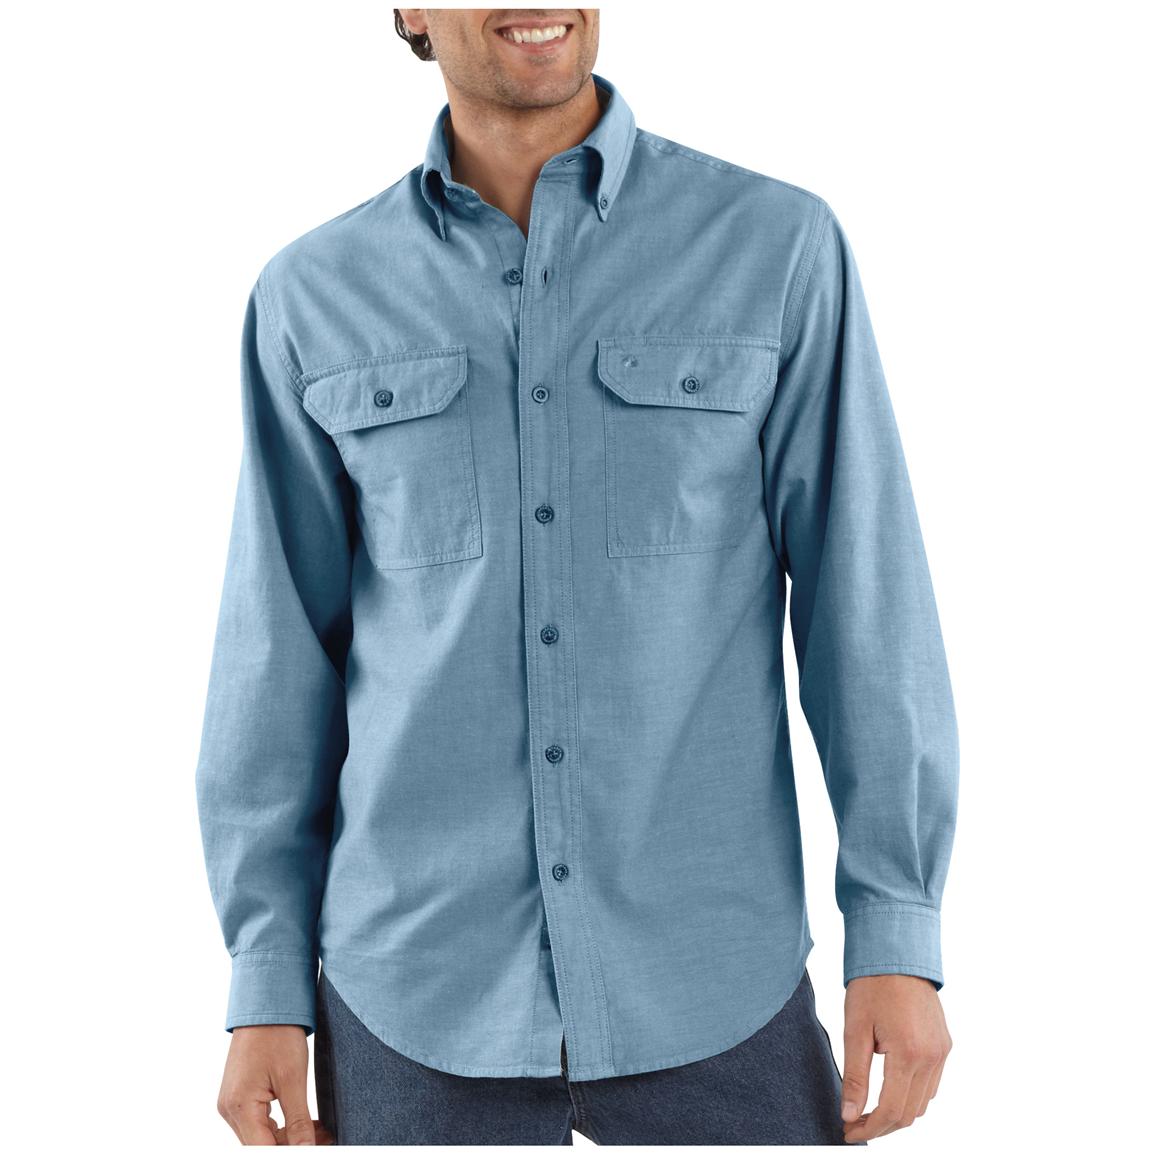 Mens Carhartt® Long Sleeve Chambray Work Shirt 282602 Shirts At Sportsmans Guide